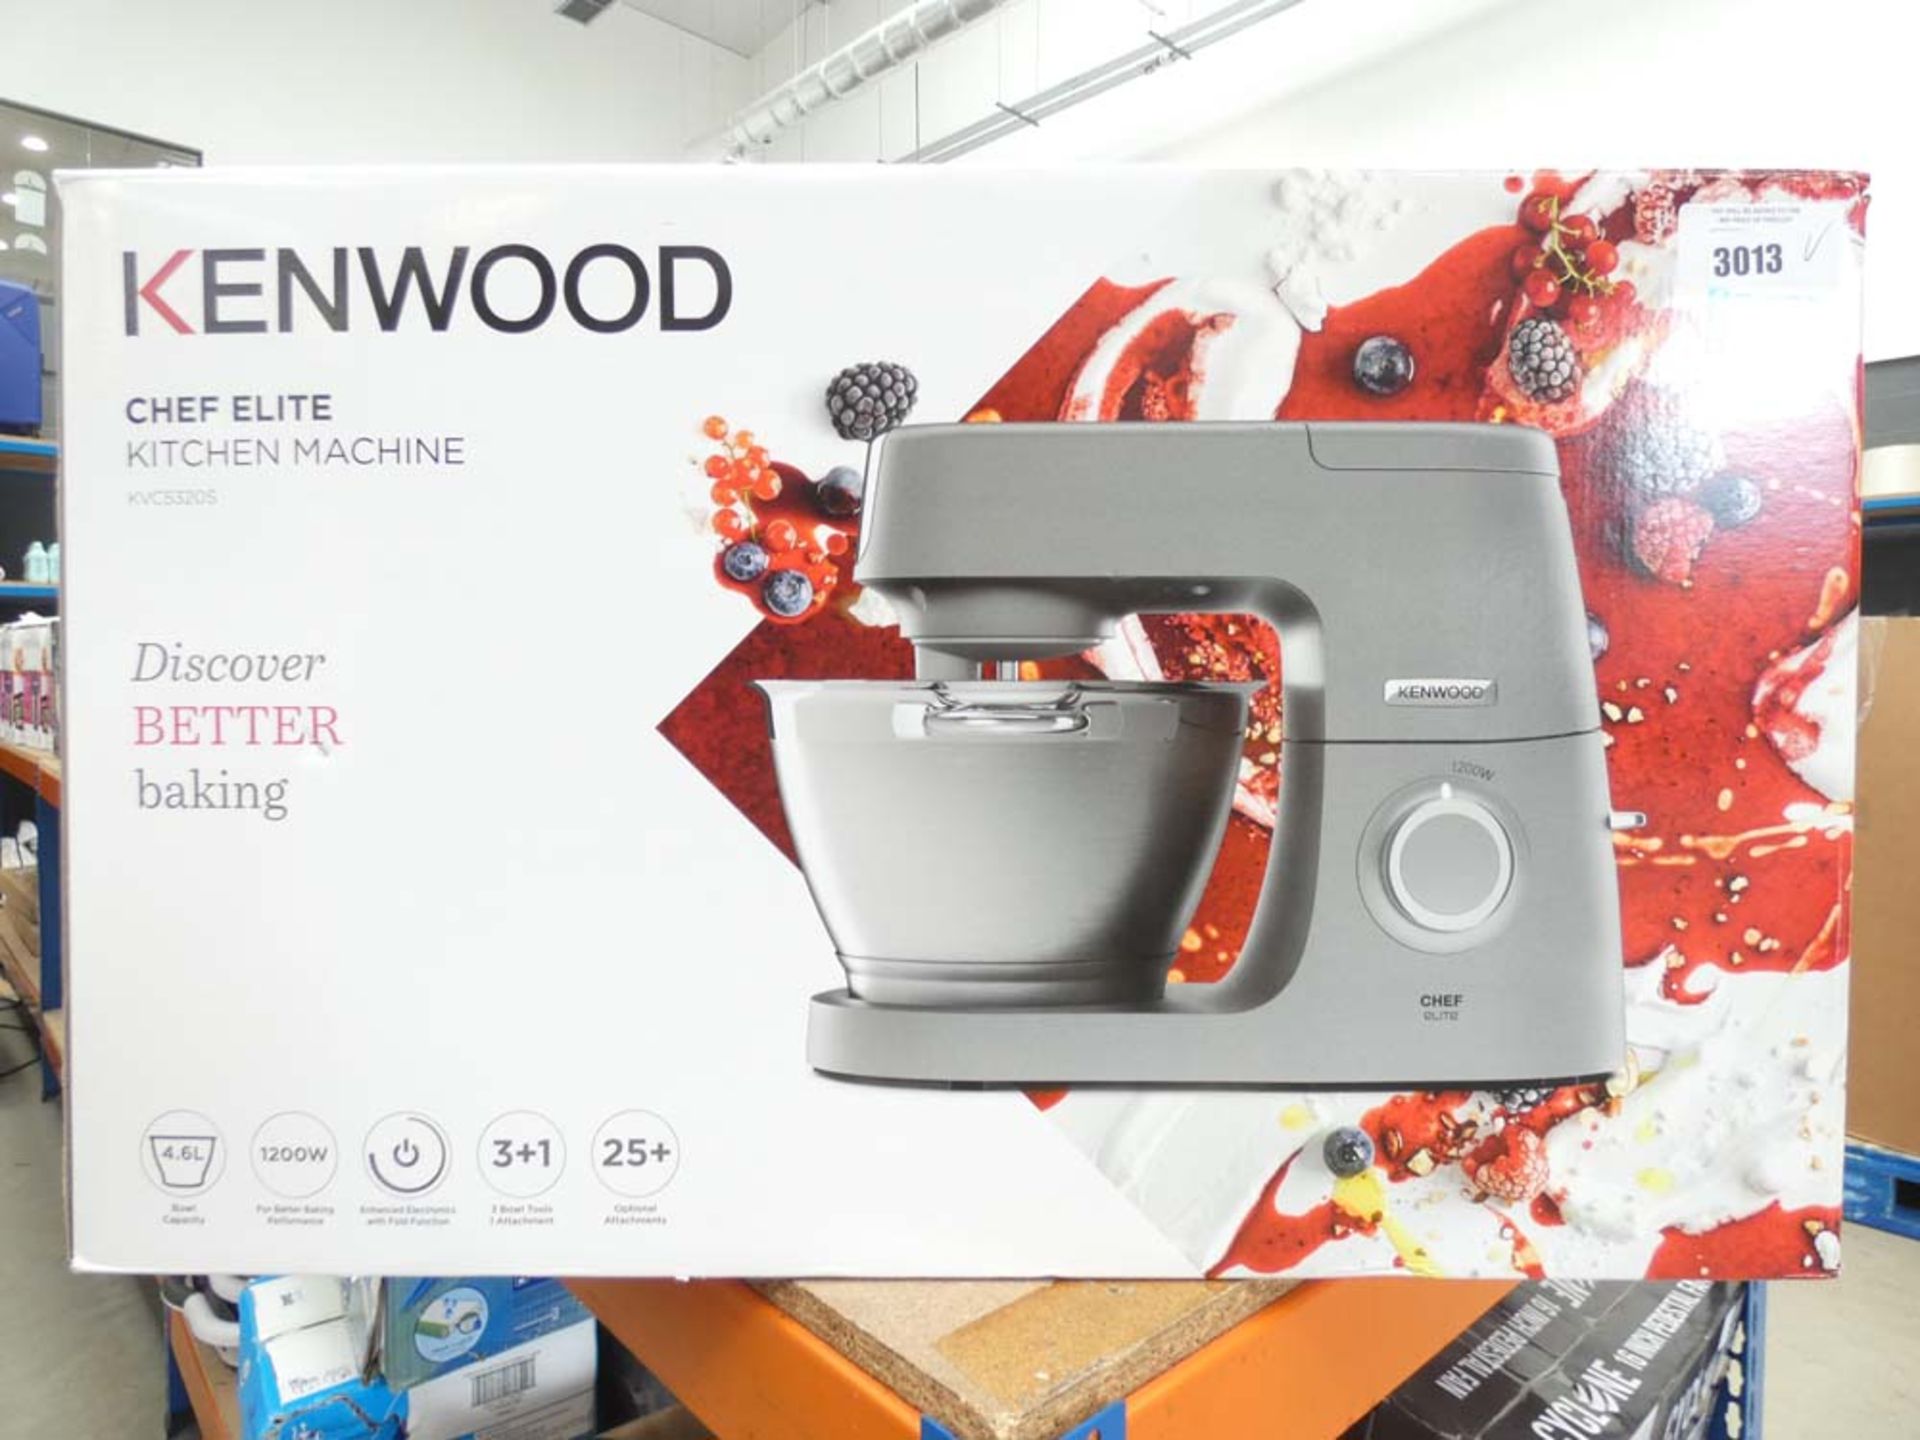 (81) Kenwood chef elite kitchen machine